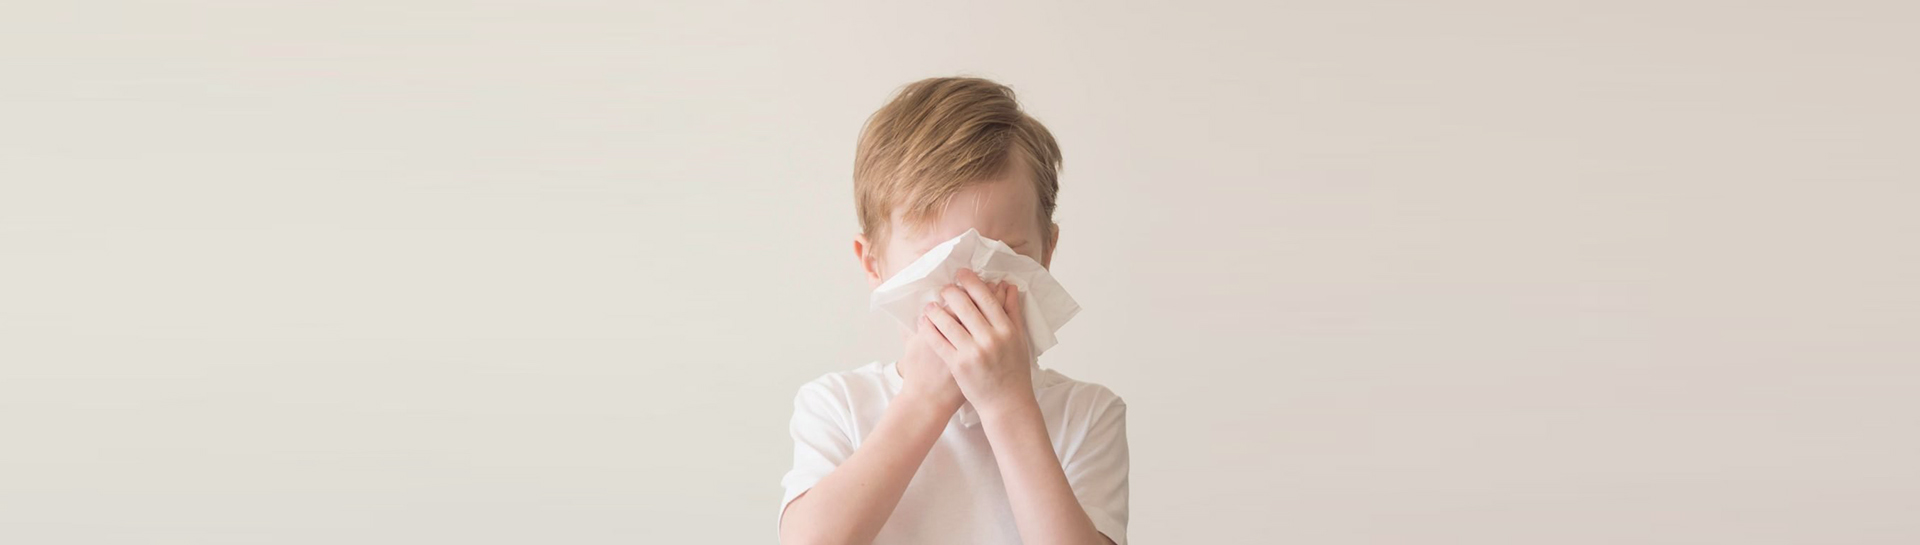 Poliambulatori Primavera - Allergologia Pediatrica - visita allergologica